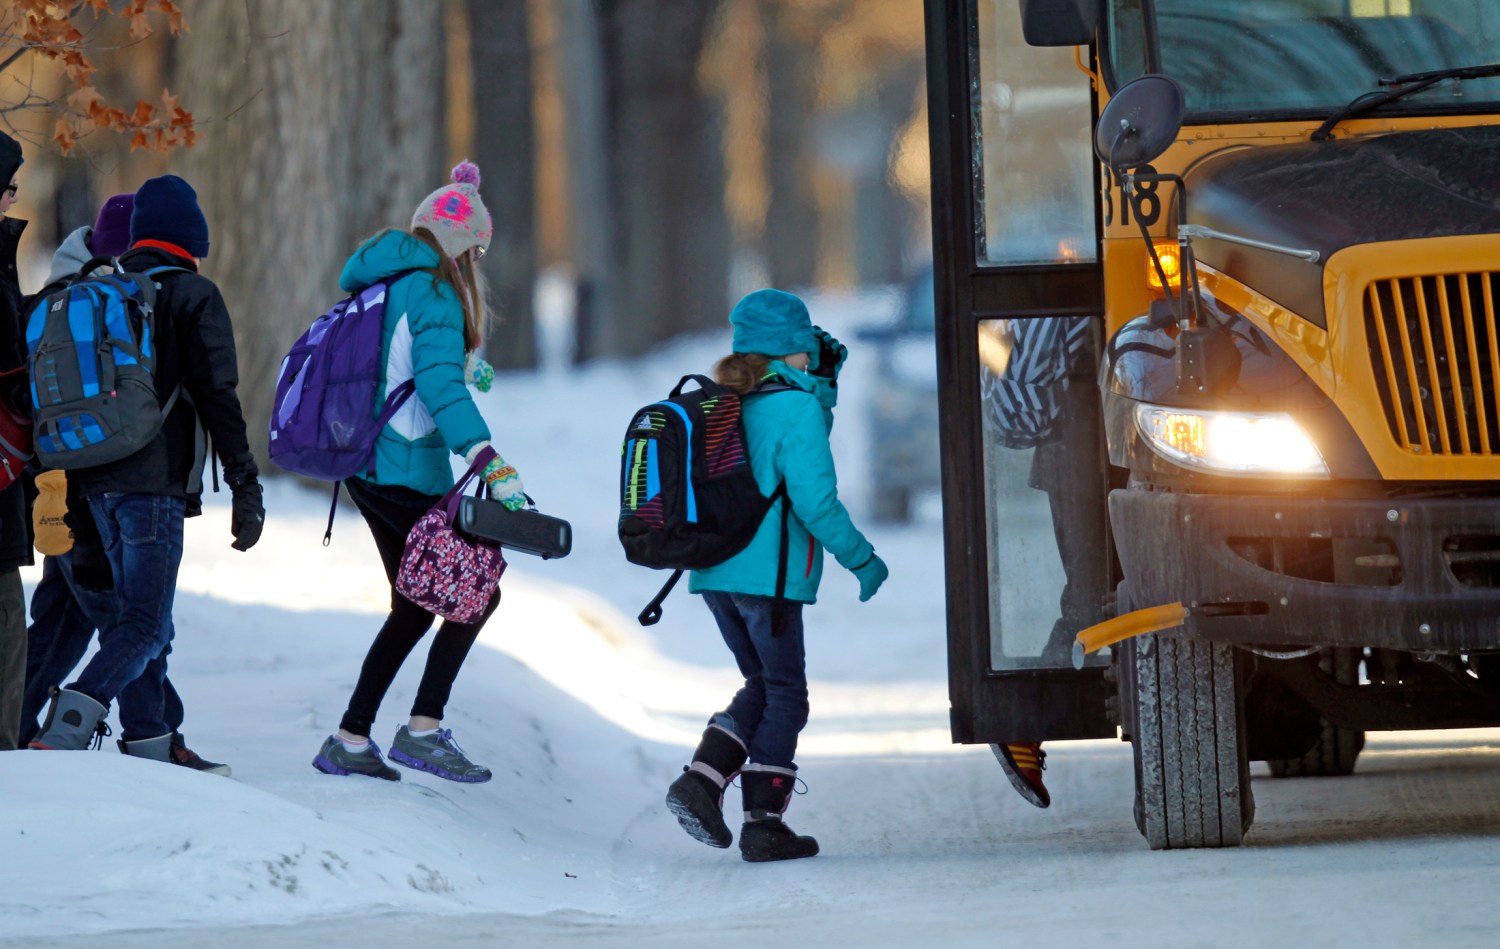 Students board their school bus in a sub-zero temperature.